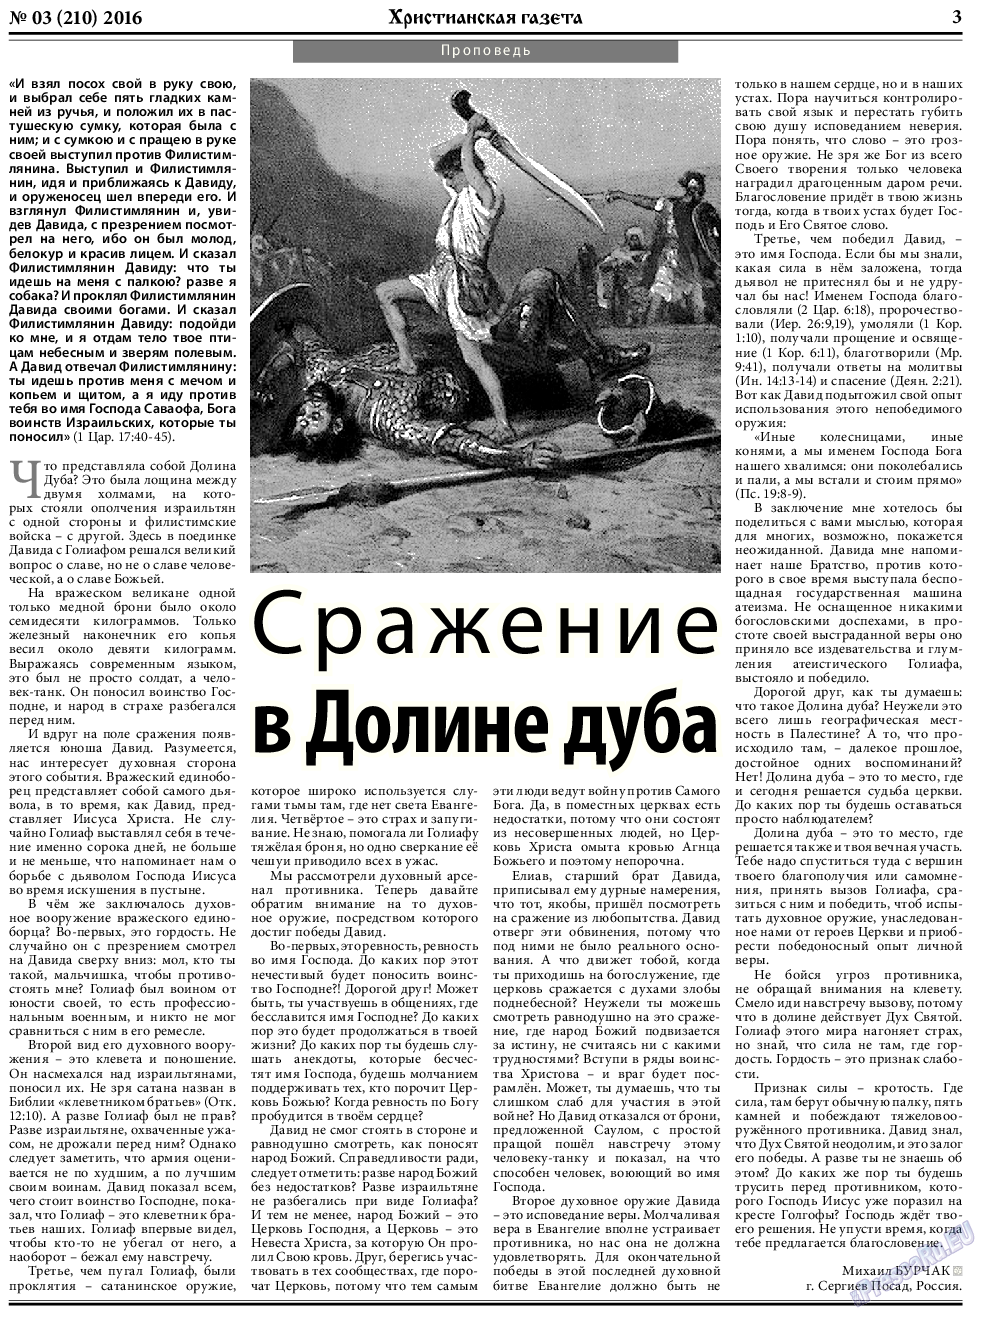 Христианская газета, газета. 2016 №3 стр.3